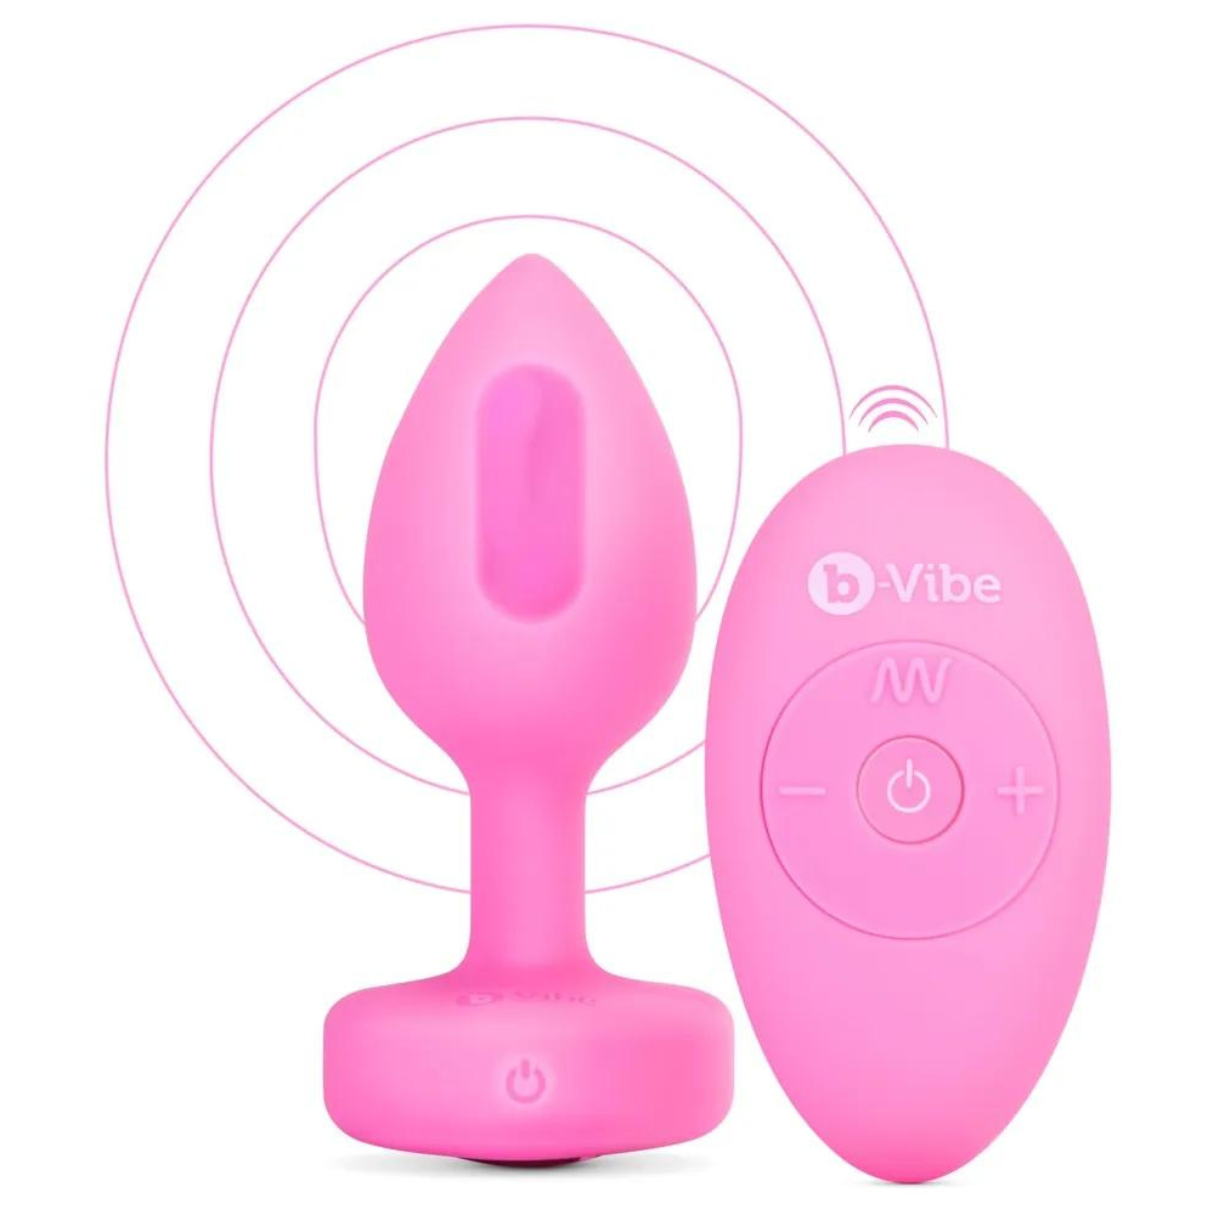 B-VIBE vibrating heart Vibrator